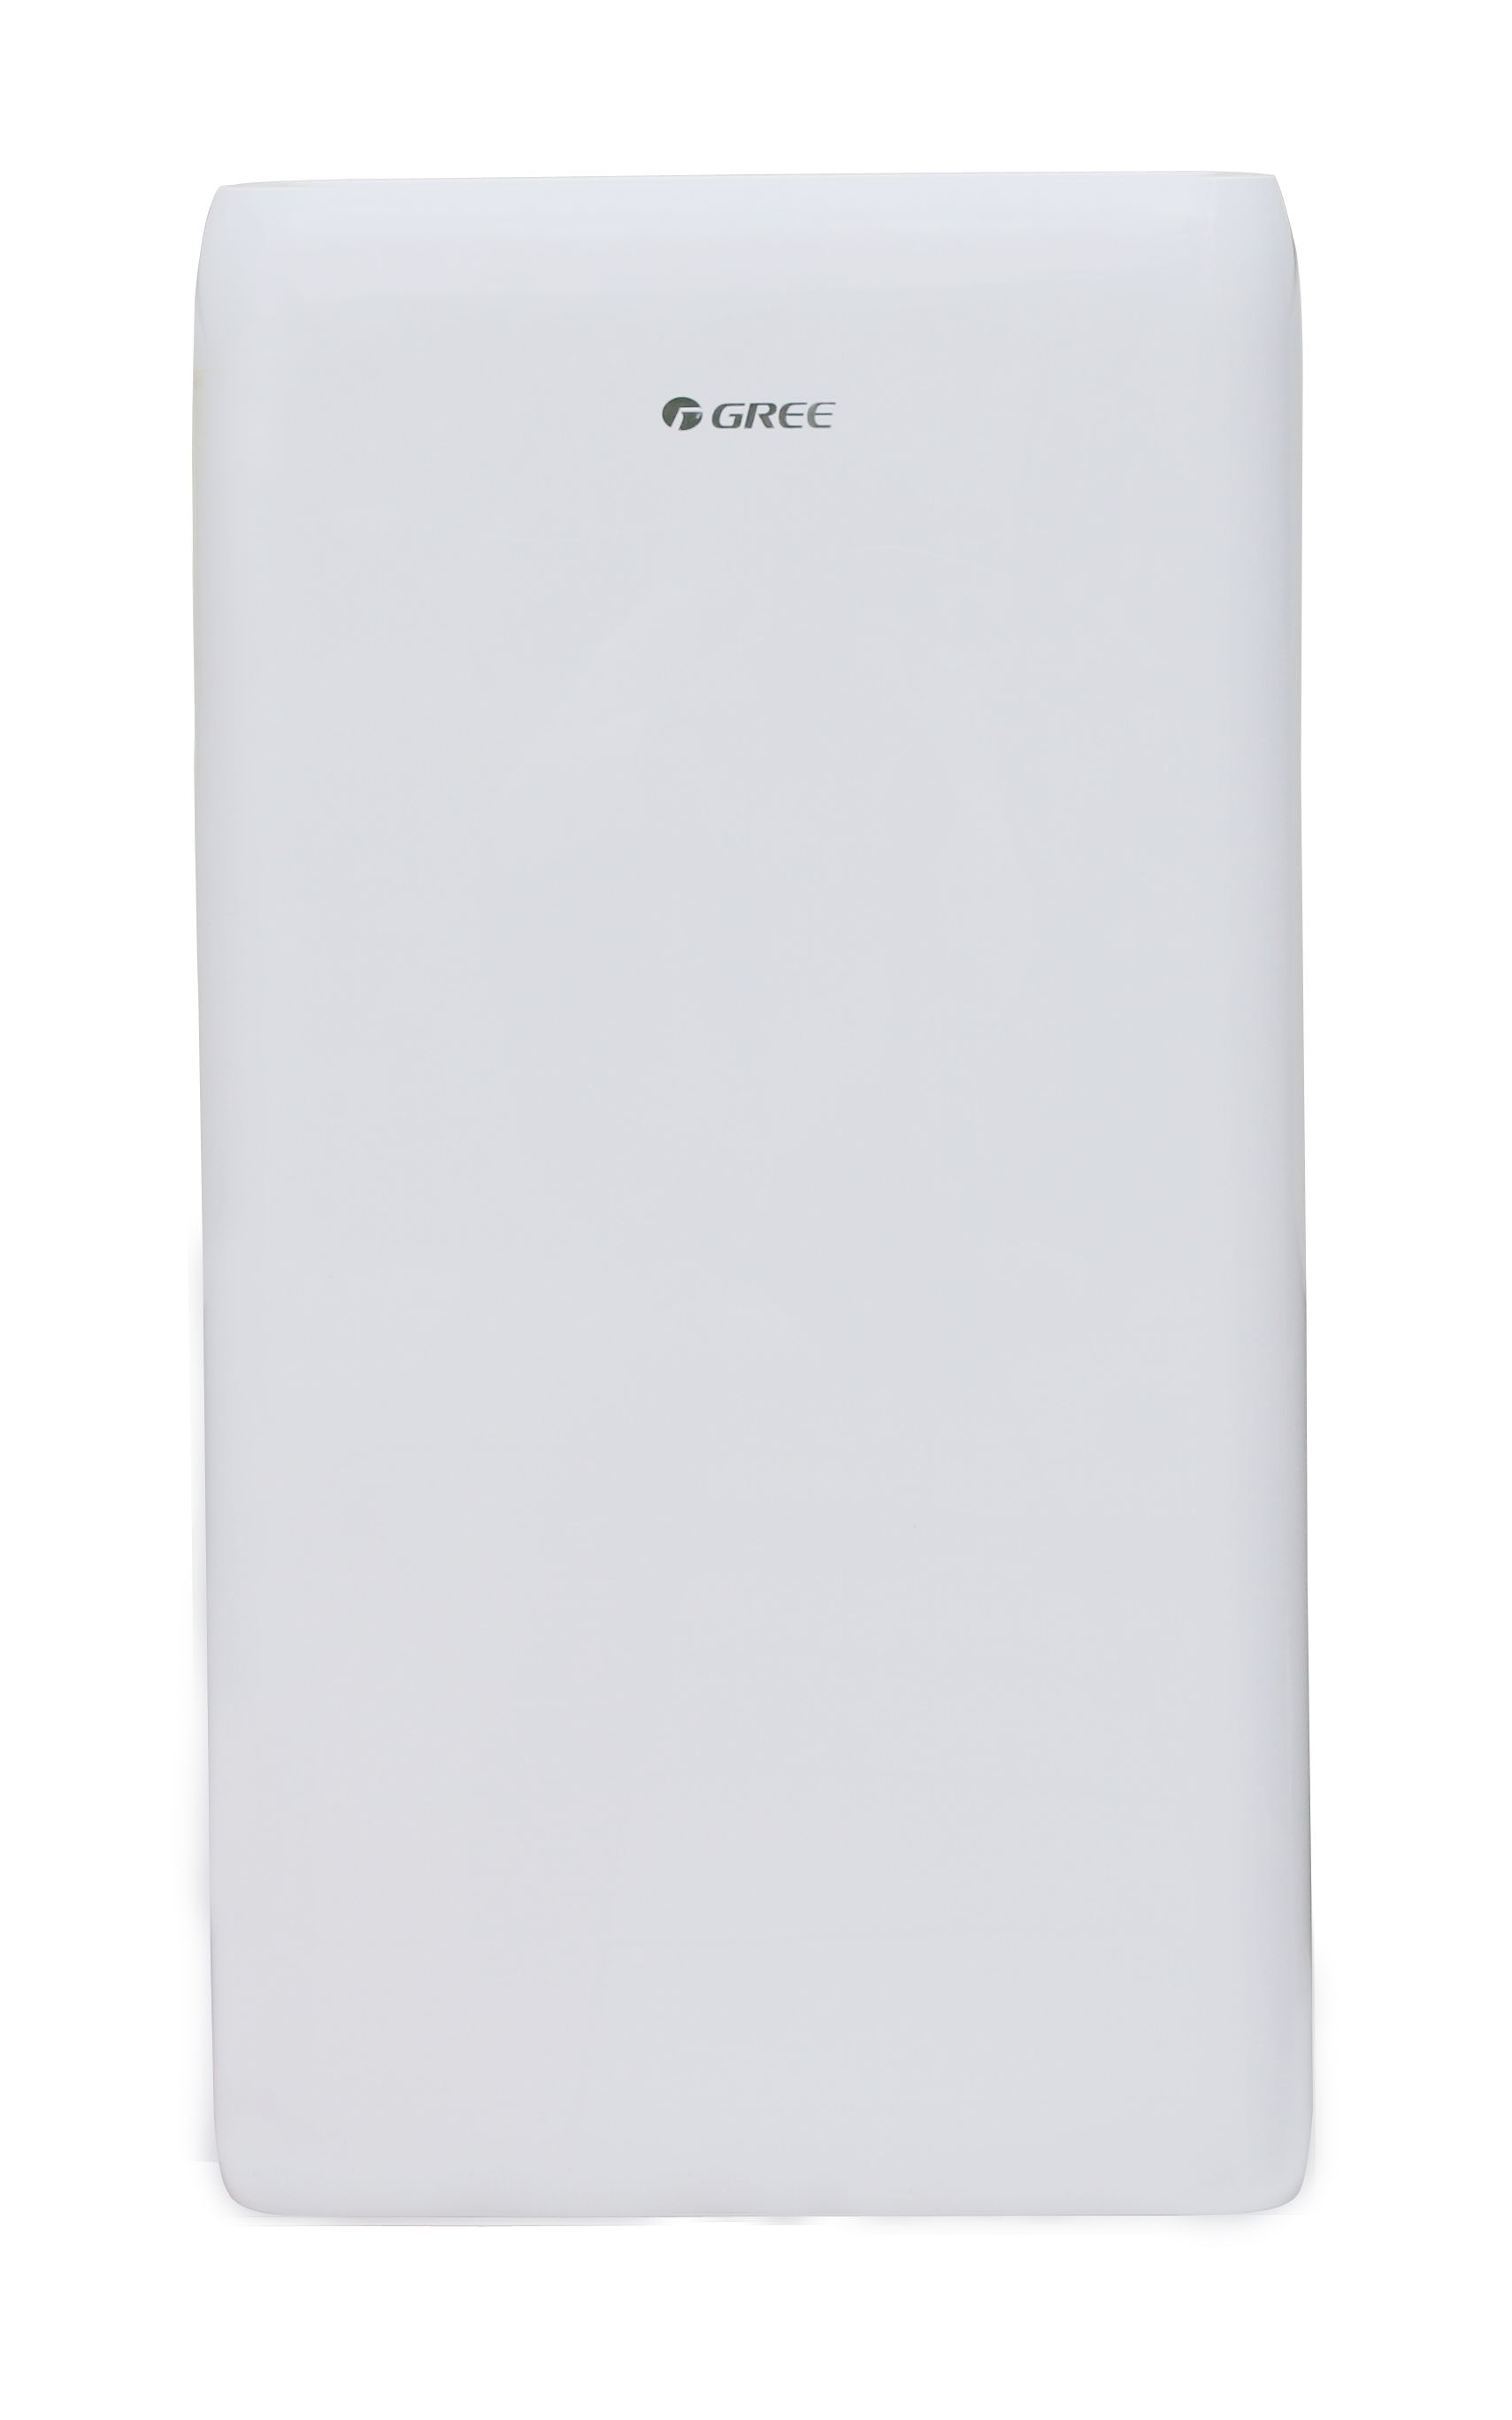 GREE Mobile Klimaanlage AOVIA Kälteleistung: 29 kW (9895 Btu/h)  Energie-Klasse A+ GPC10AO-K5NNA1A günstig versandkostenfrei online kaufen:  große Auswahl günstige Preise